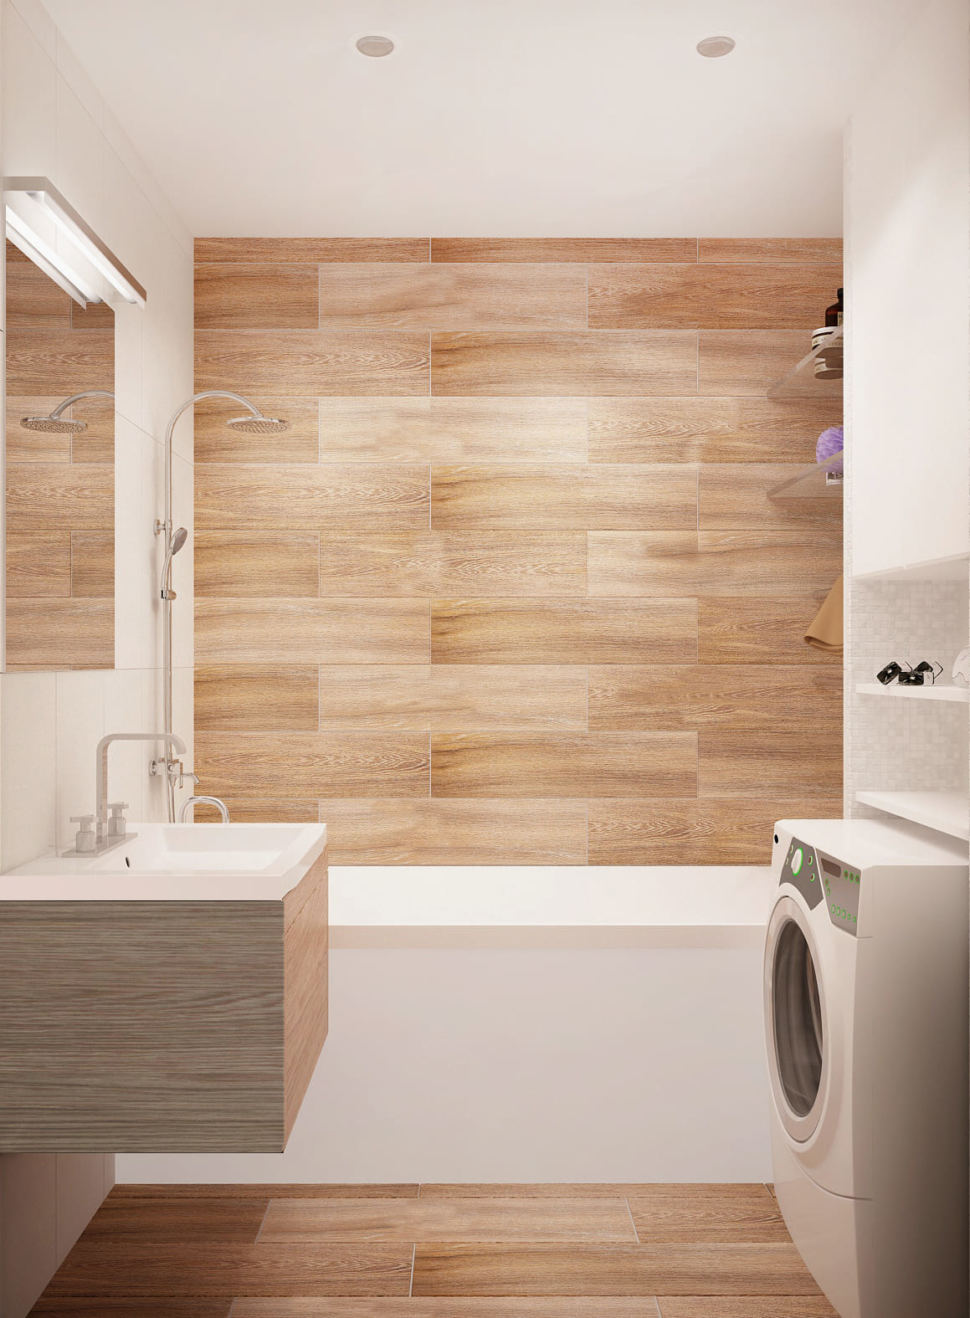 Визуализация ванной комнаты 3 кв.м в древесных и белых оттенках, ванная, стиральная машинка, подвесная тумба, зеркало, потолочные светильники